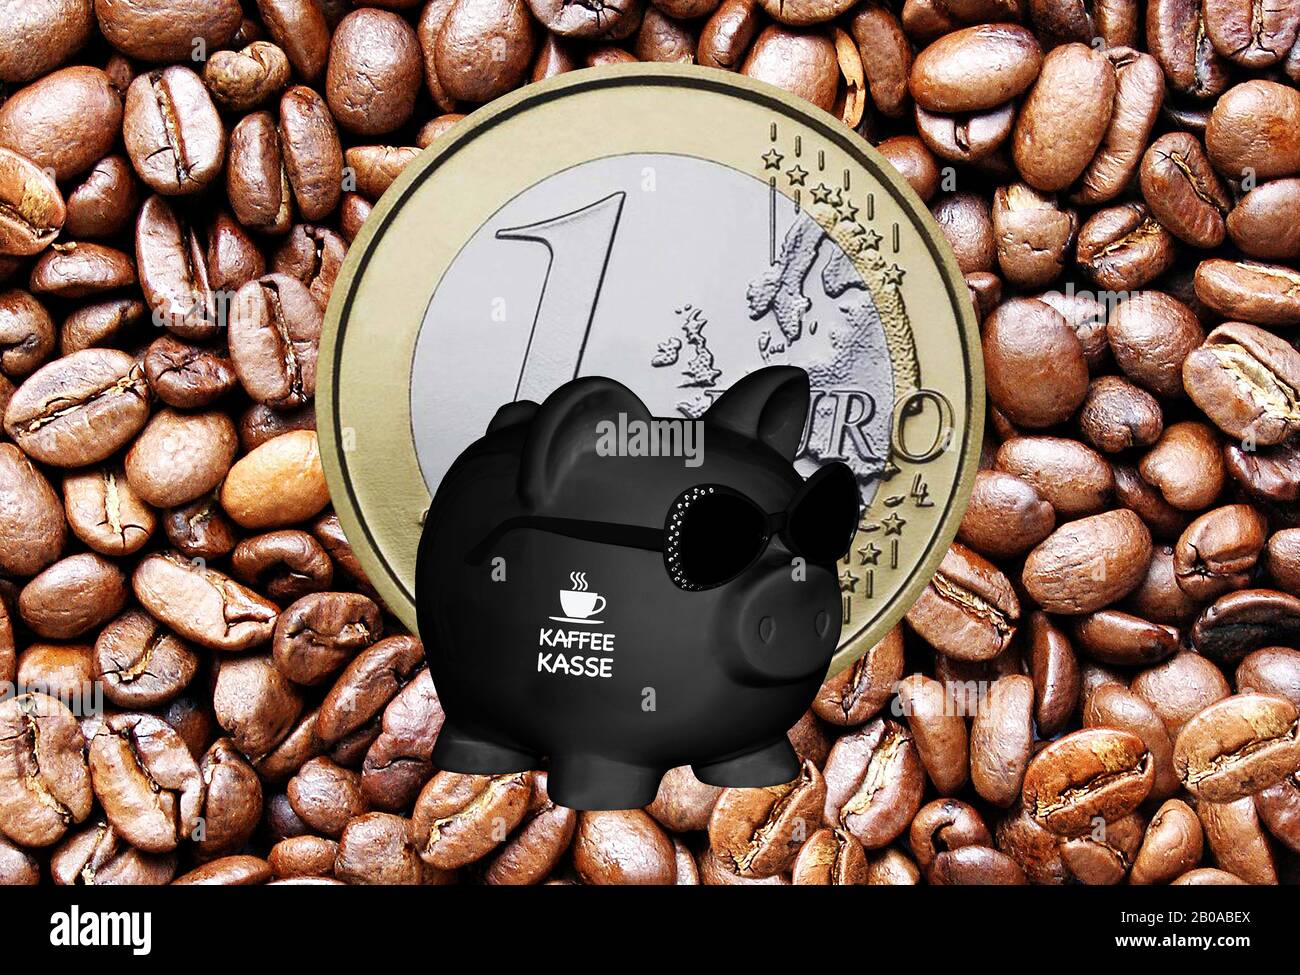 Banco negro piggy con gafas de sol con las letras Kaffeekasse, kitty, granos de café y 1 euro moneda en el fondo, componiendo Foto de stock